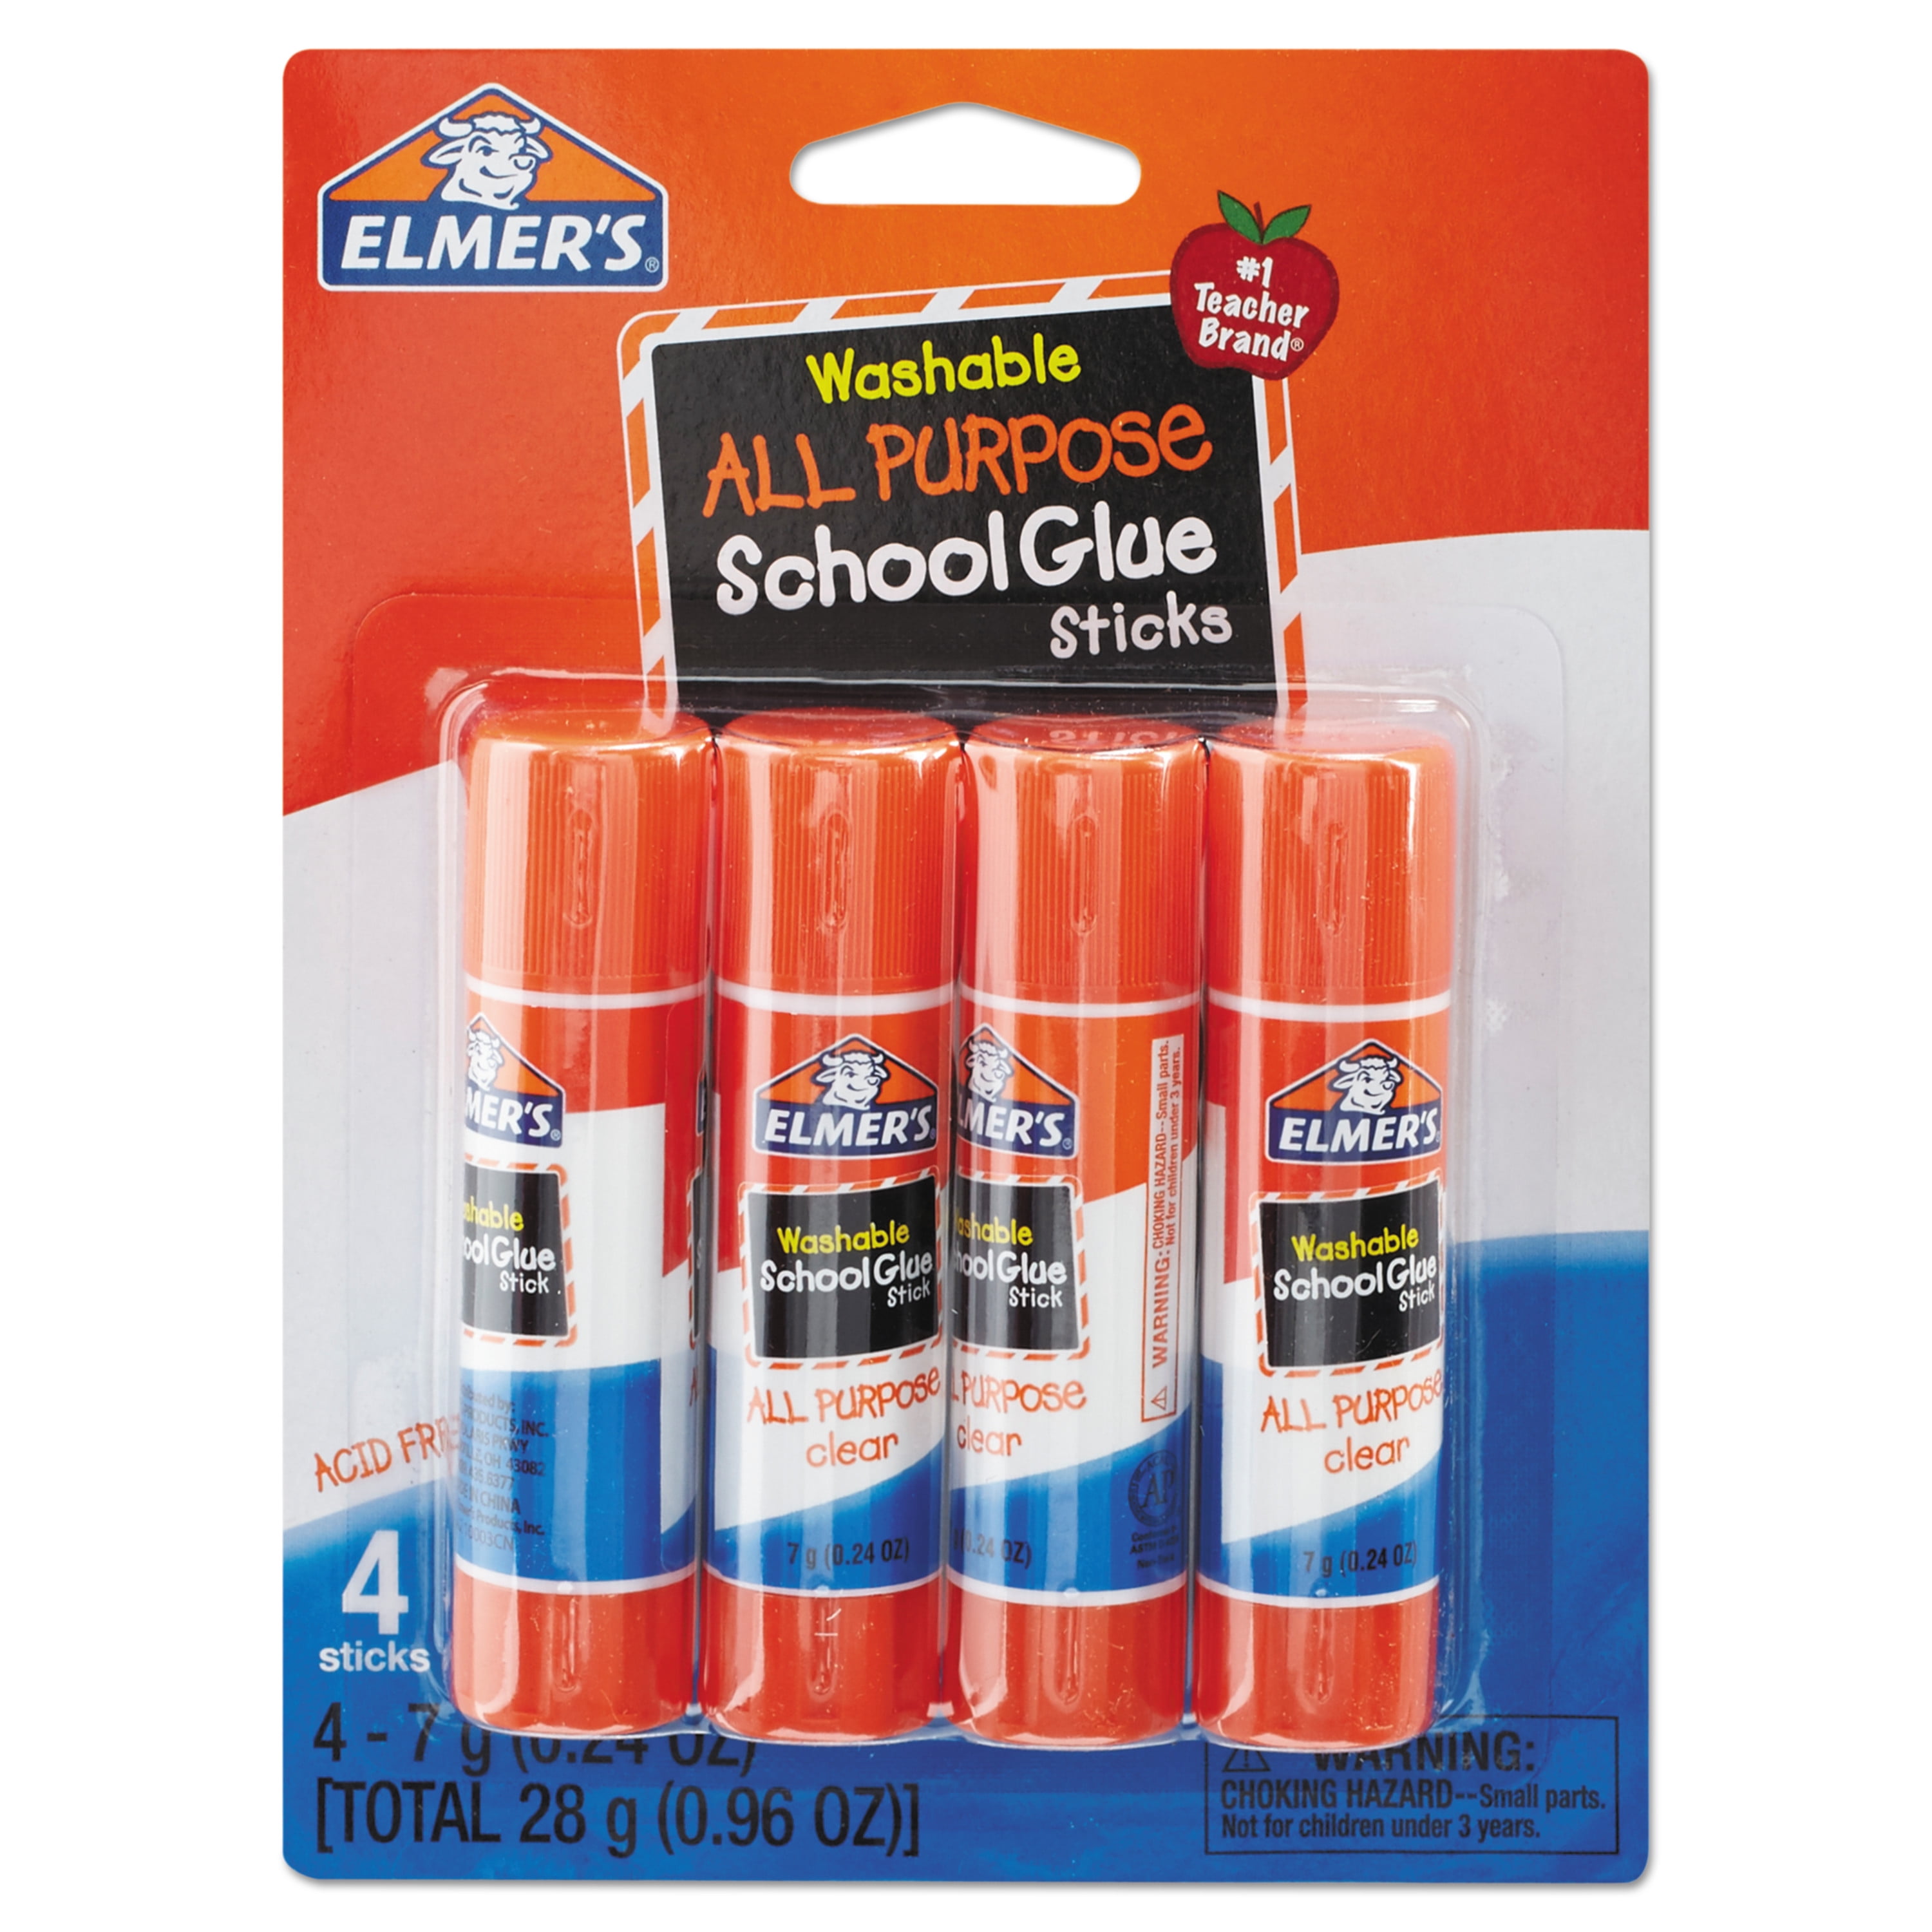 Elmer's® .24 oz. Clear Glue Sticks - Set of 30